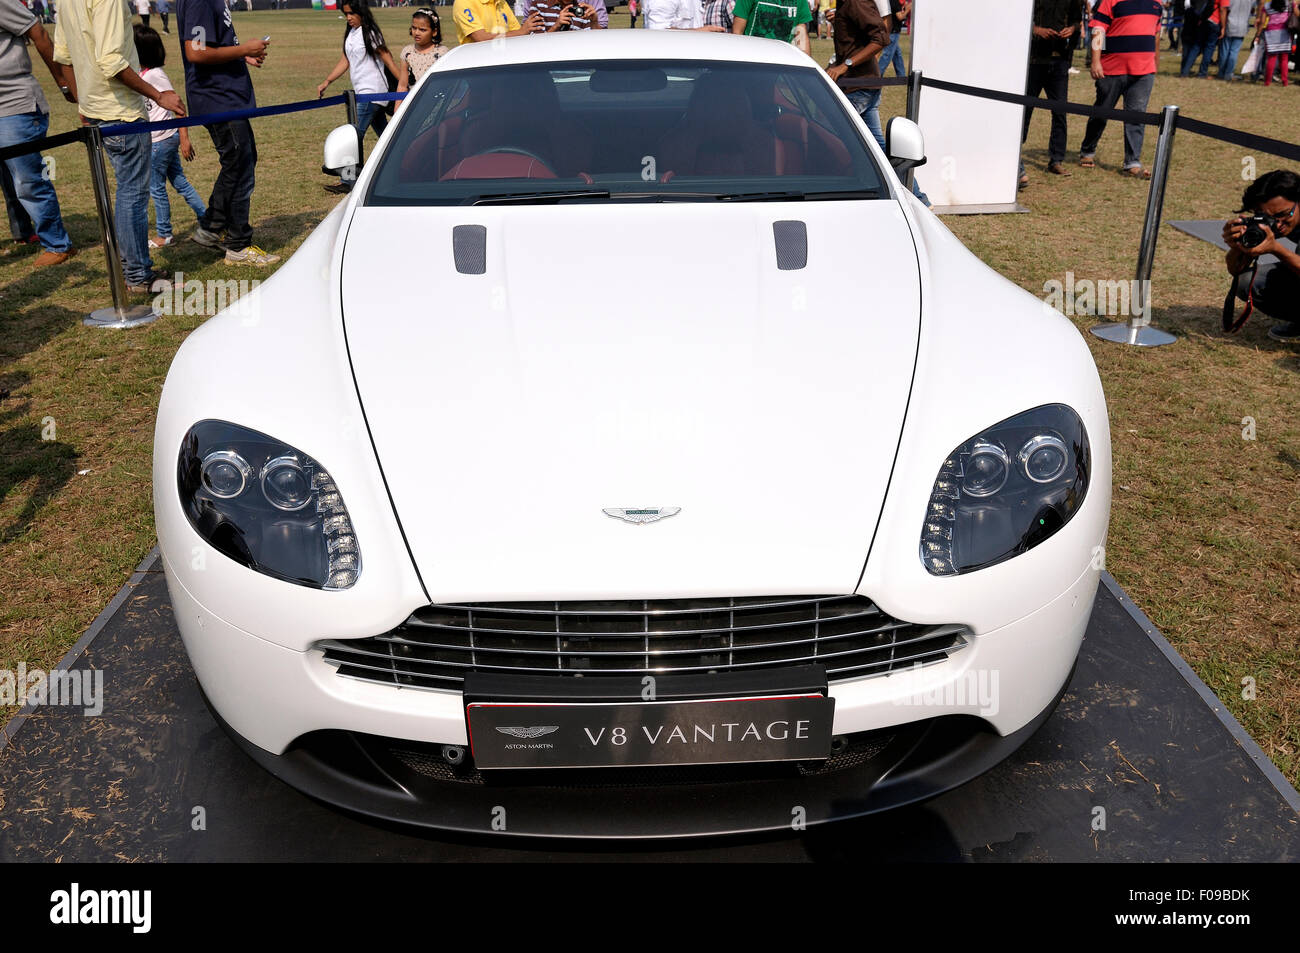 Front View of Aston Martin V8 Vantage at ( Mumbai ) Bombay Sports Car Show Stock Photo